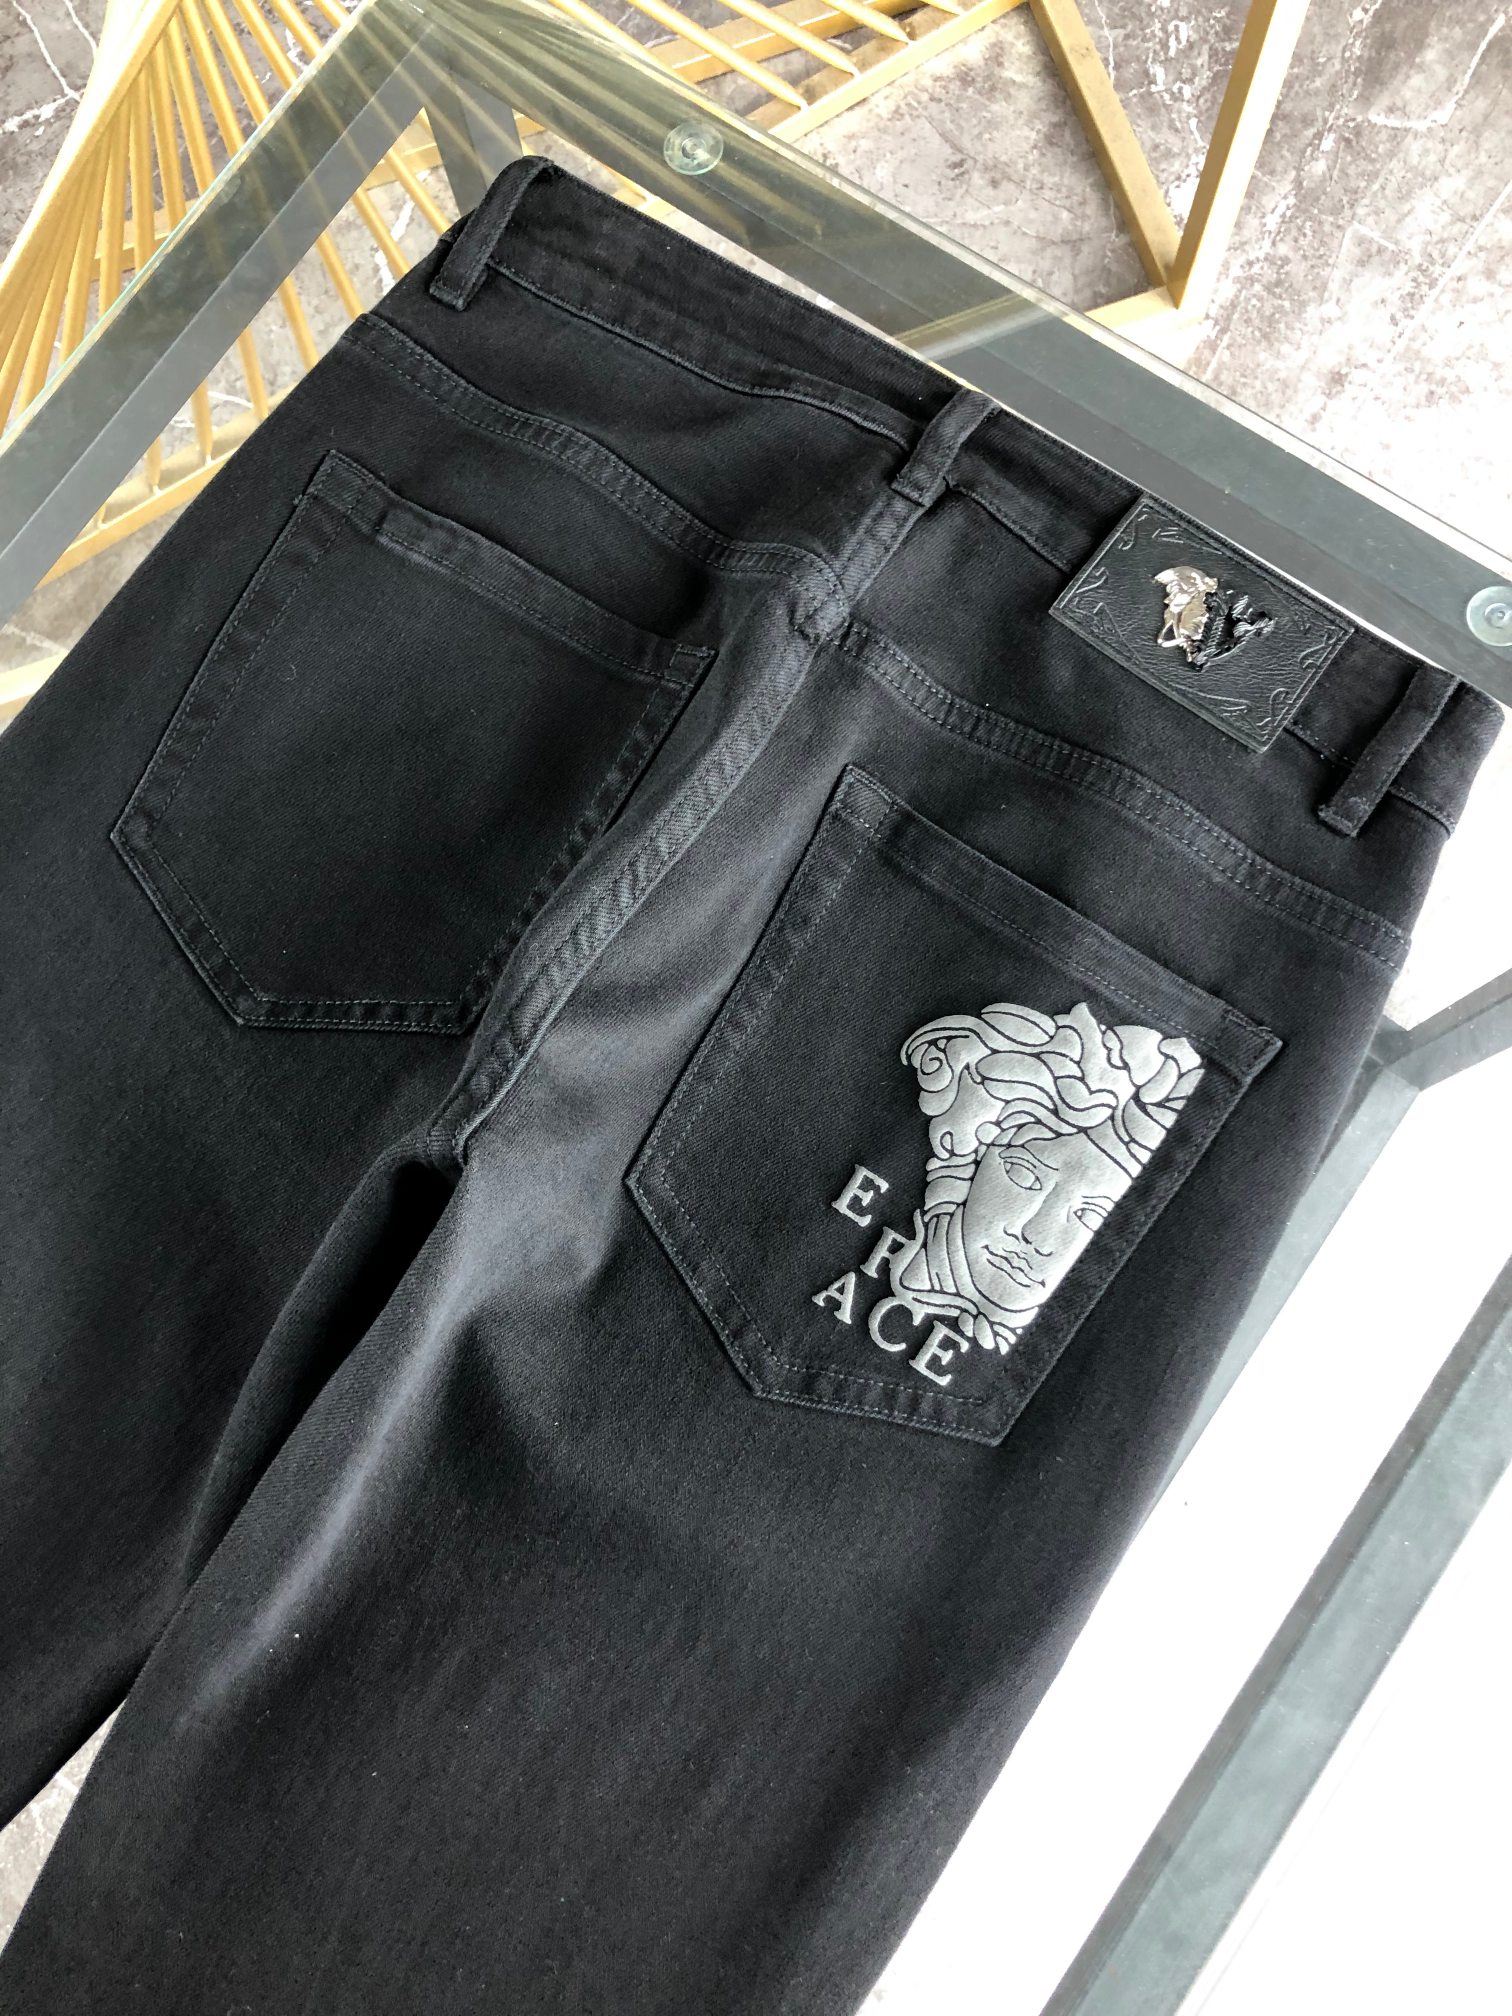 范思哲春夏新品专柜有售实体店极品牛仔裤专柜原版1:1好货适合各个年龄段市场最高版本的欧洲进口面料舒适柔软